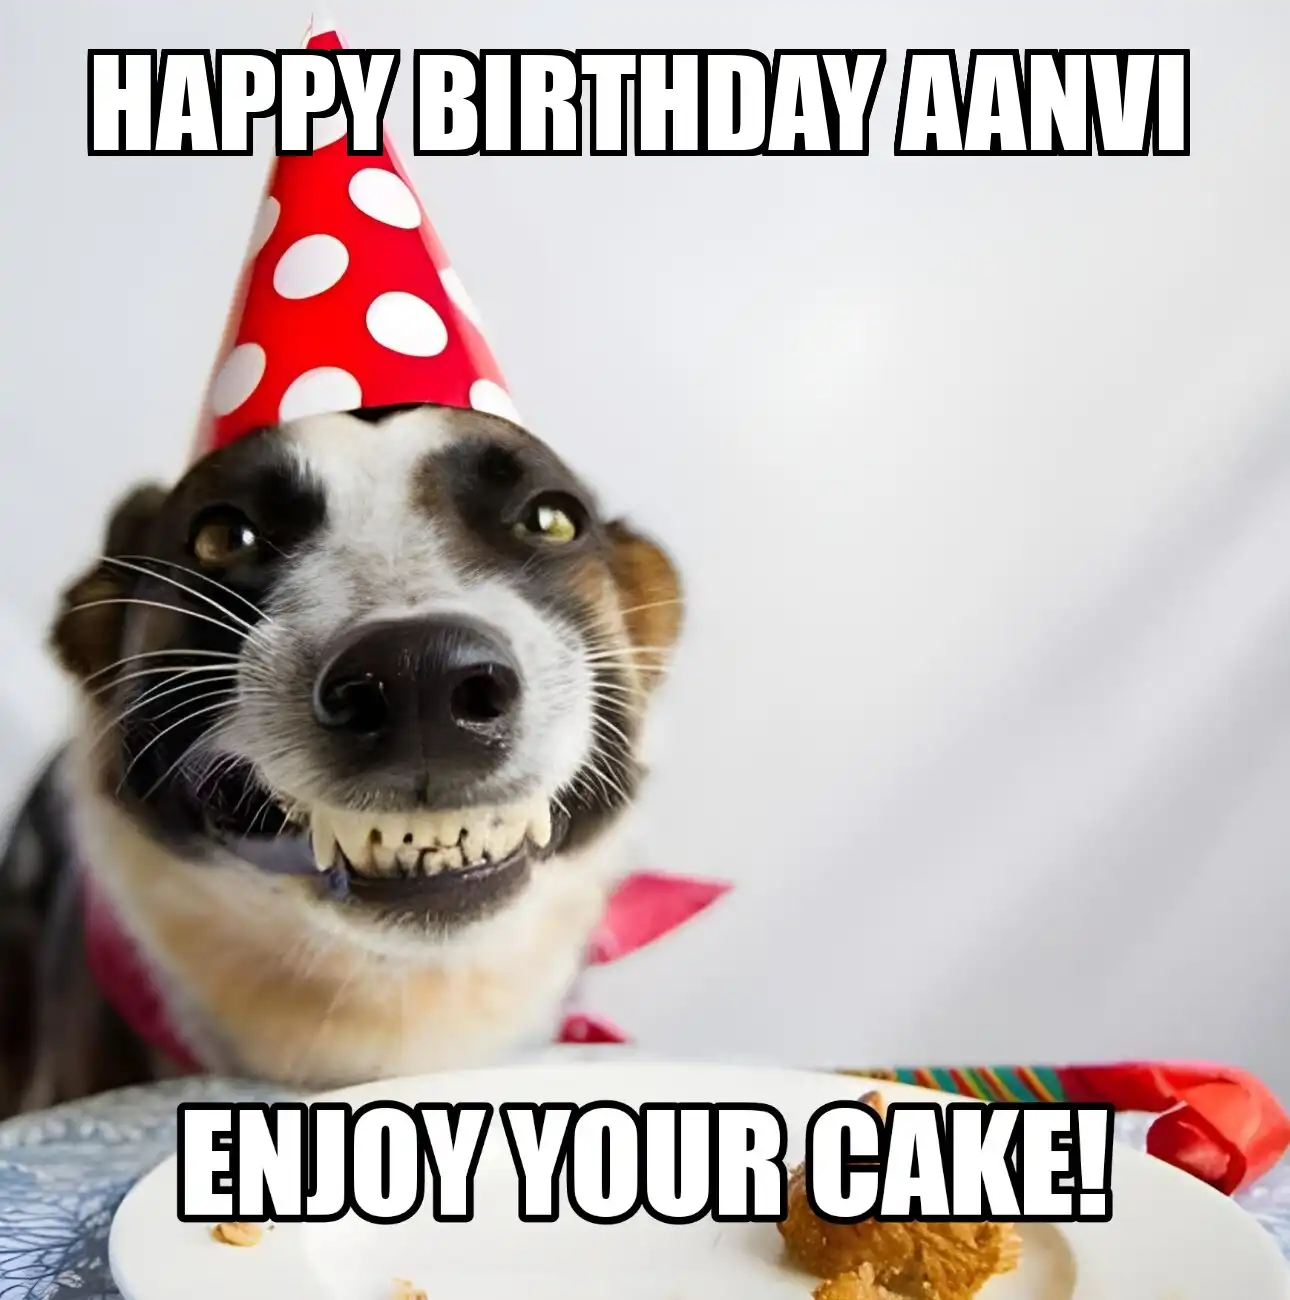 Happy Birthday Aanvi Enjoy Your Cake Dog Meme